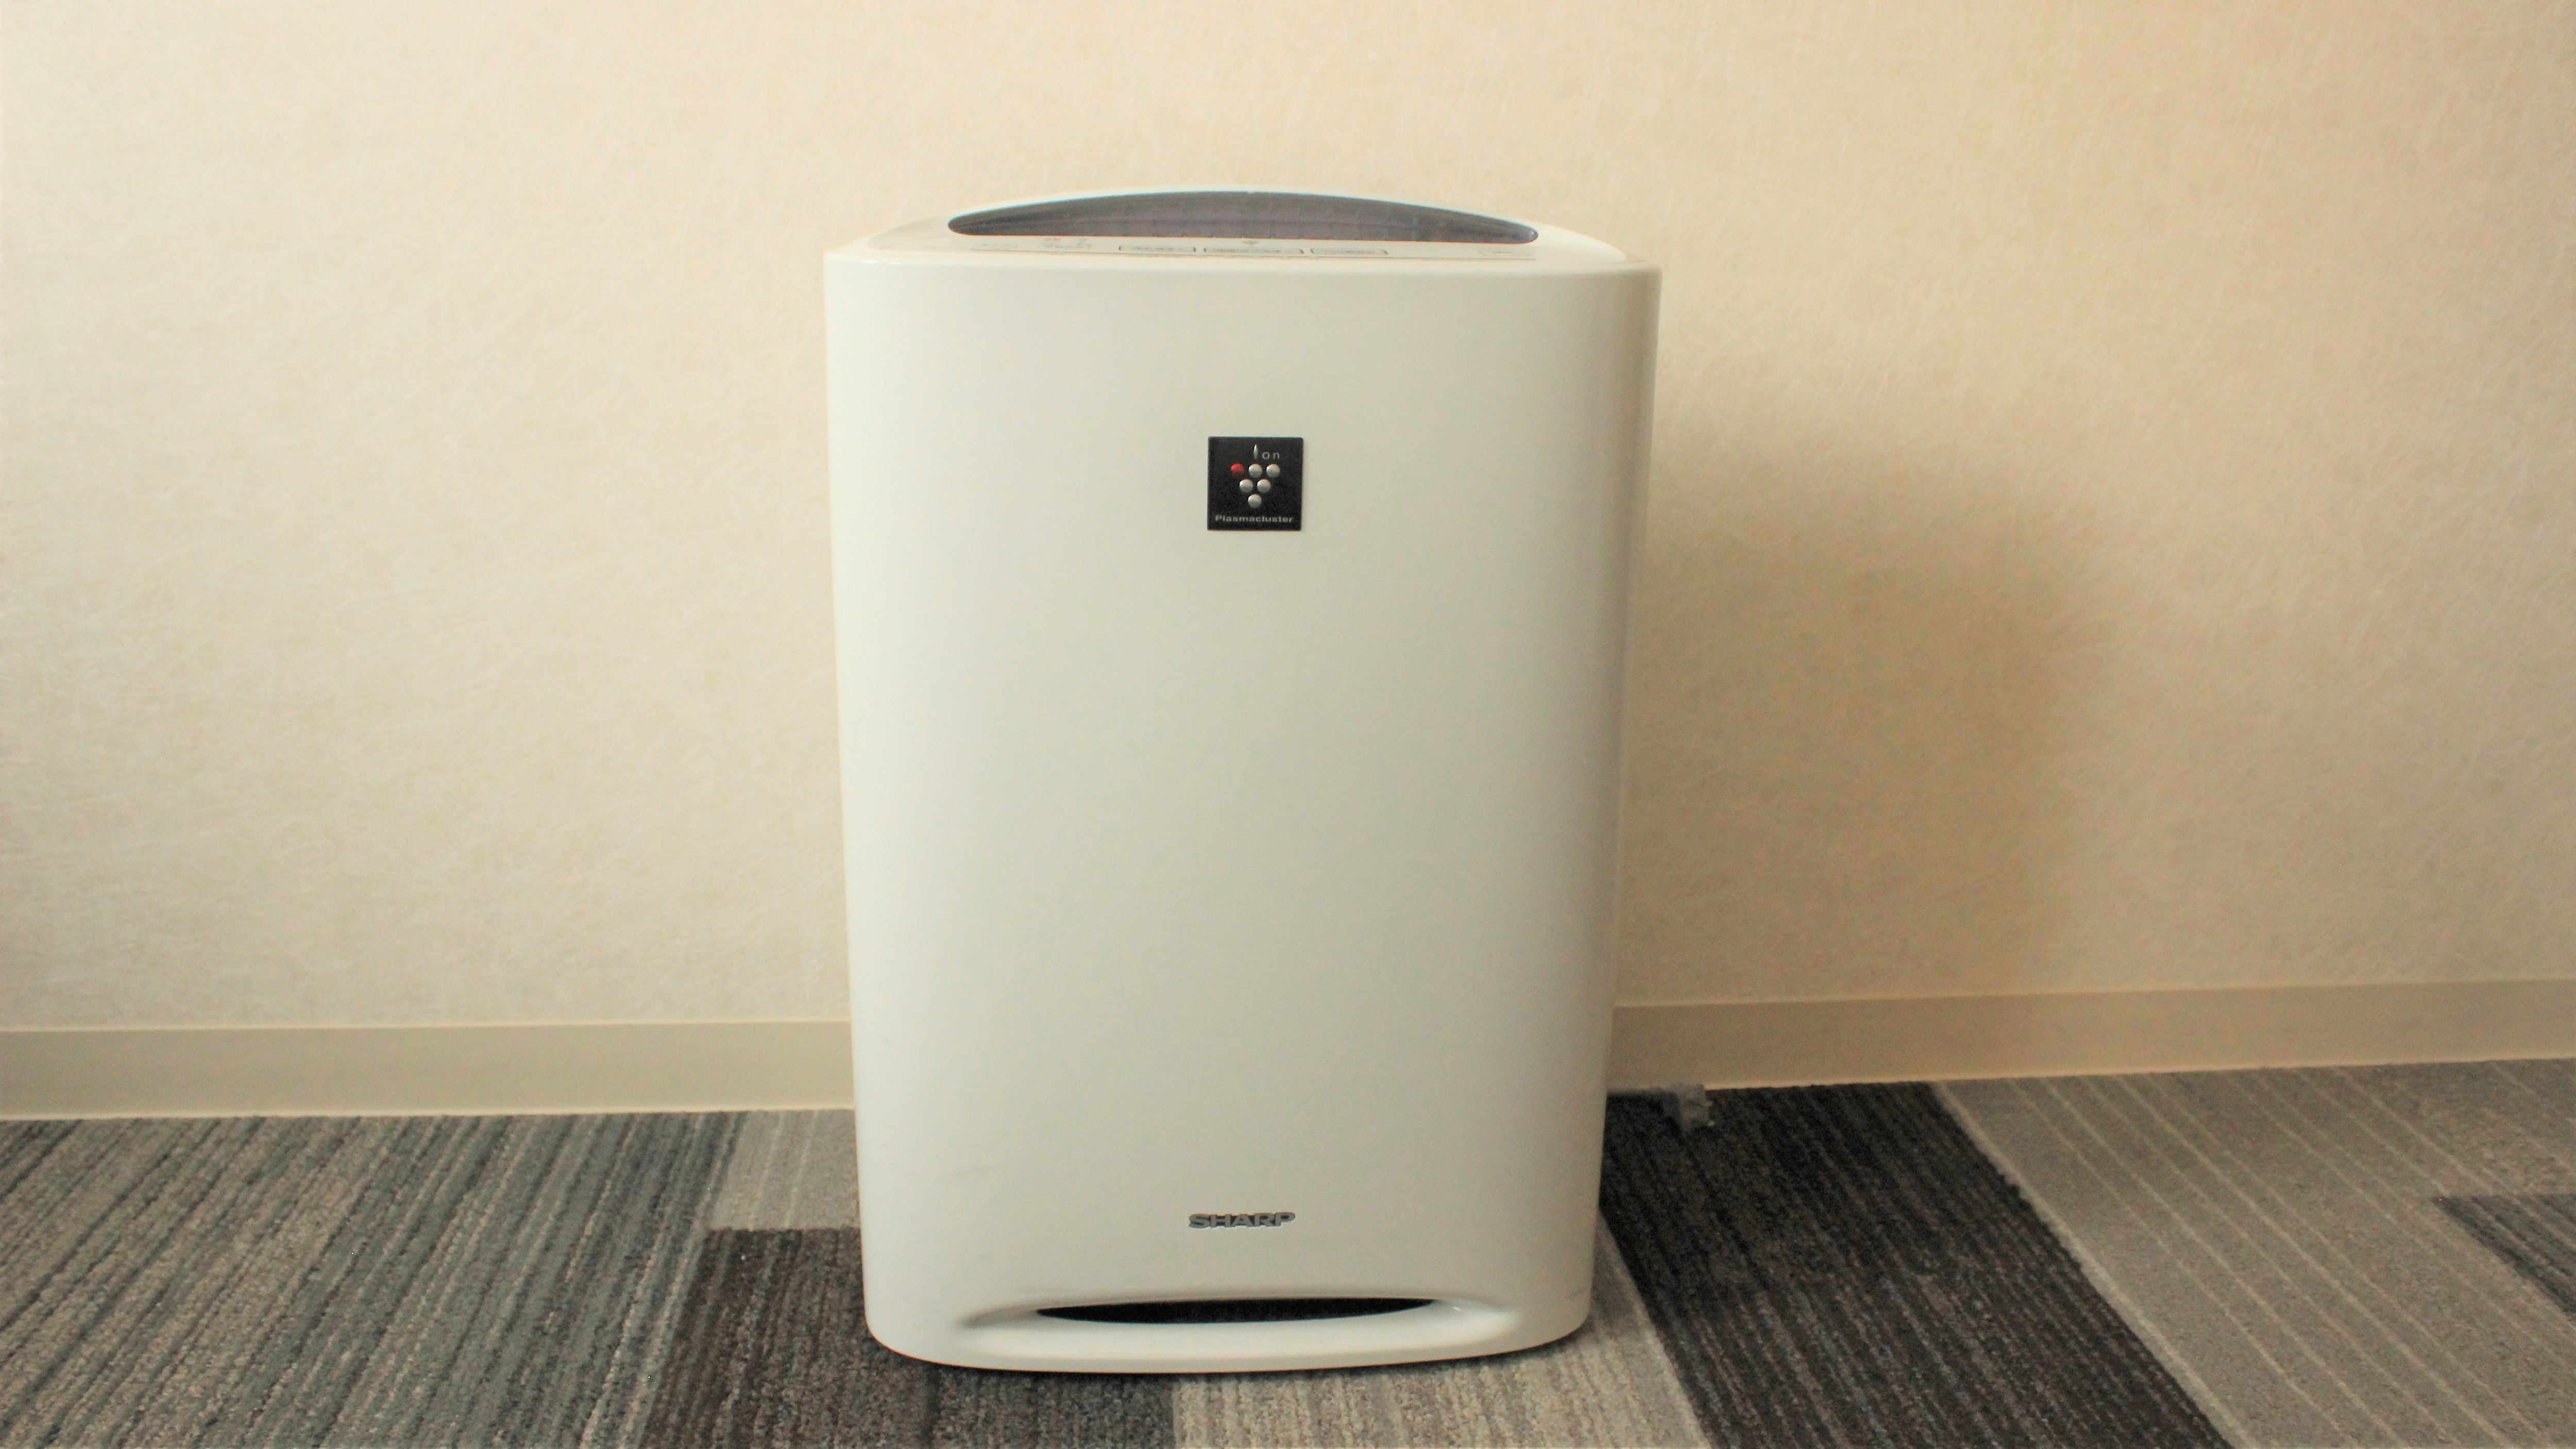 ◆ 加湿空气净化器 Plasmacluster 安装在所有房间 ◆